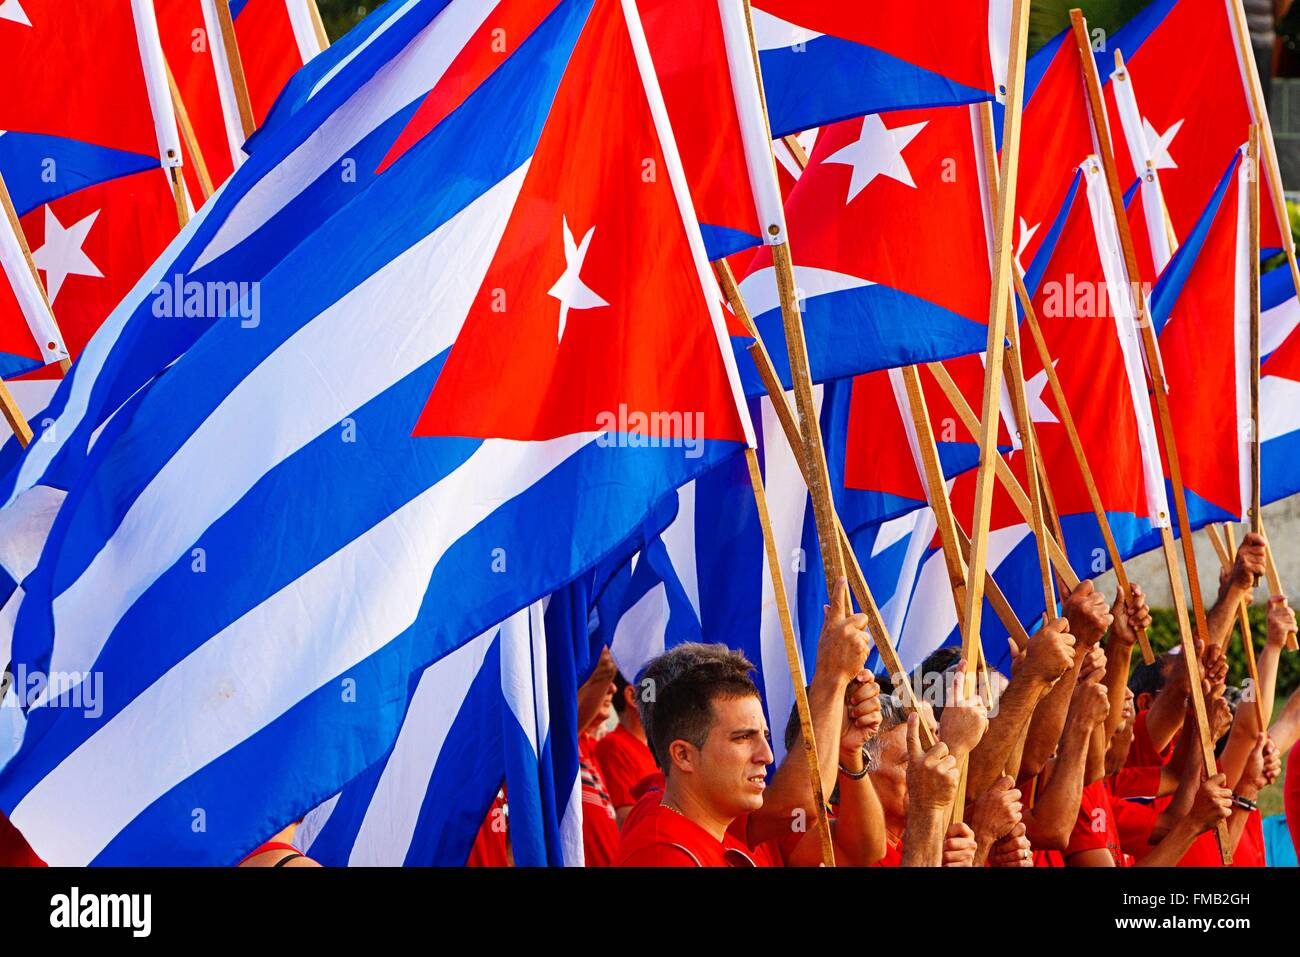 Cuba, Villa Clara, Santa Clara, Many Cuban flags waved by supporters Stock Photo